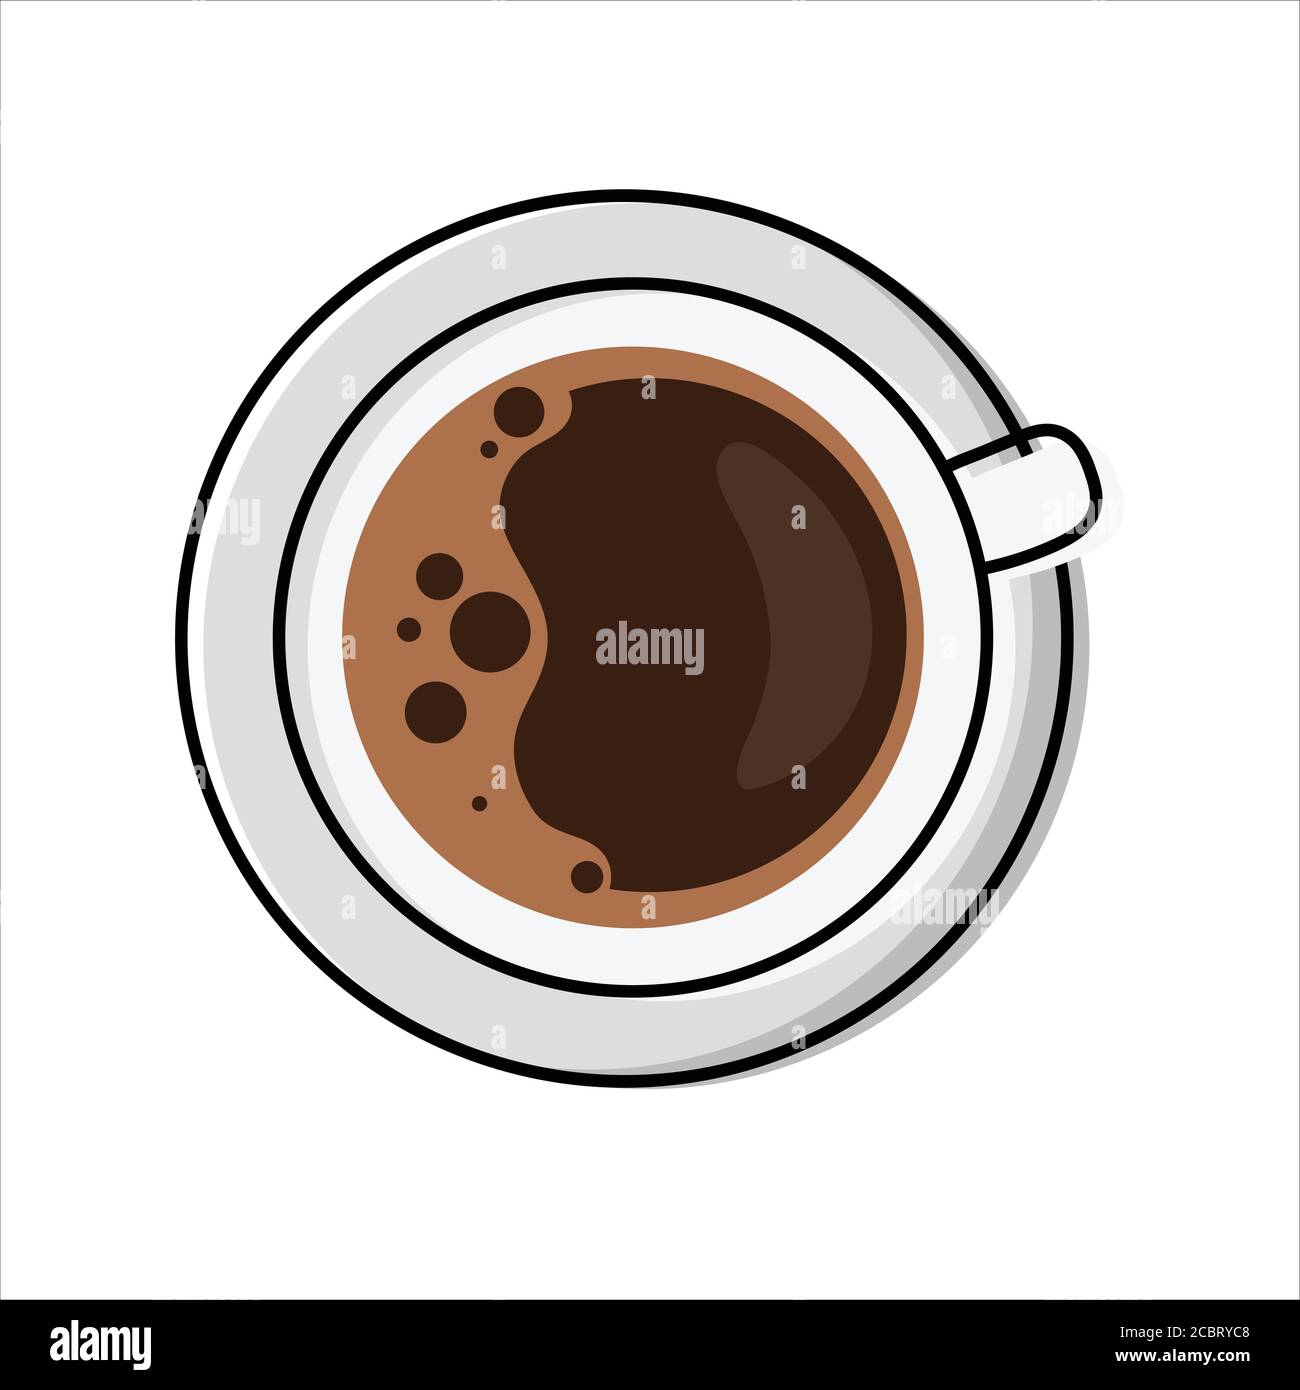 Tasse schaumigen Kaffee - Draufsicht. Vereinfachte, umrissfarbengefüllte Vektordarstellung von Americano/Espresso Drink, isoliert Stock Vektor